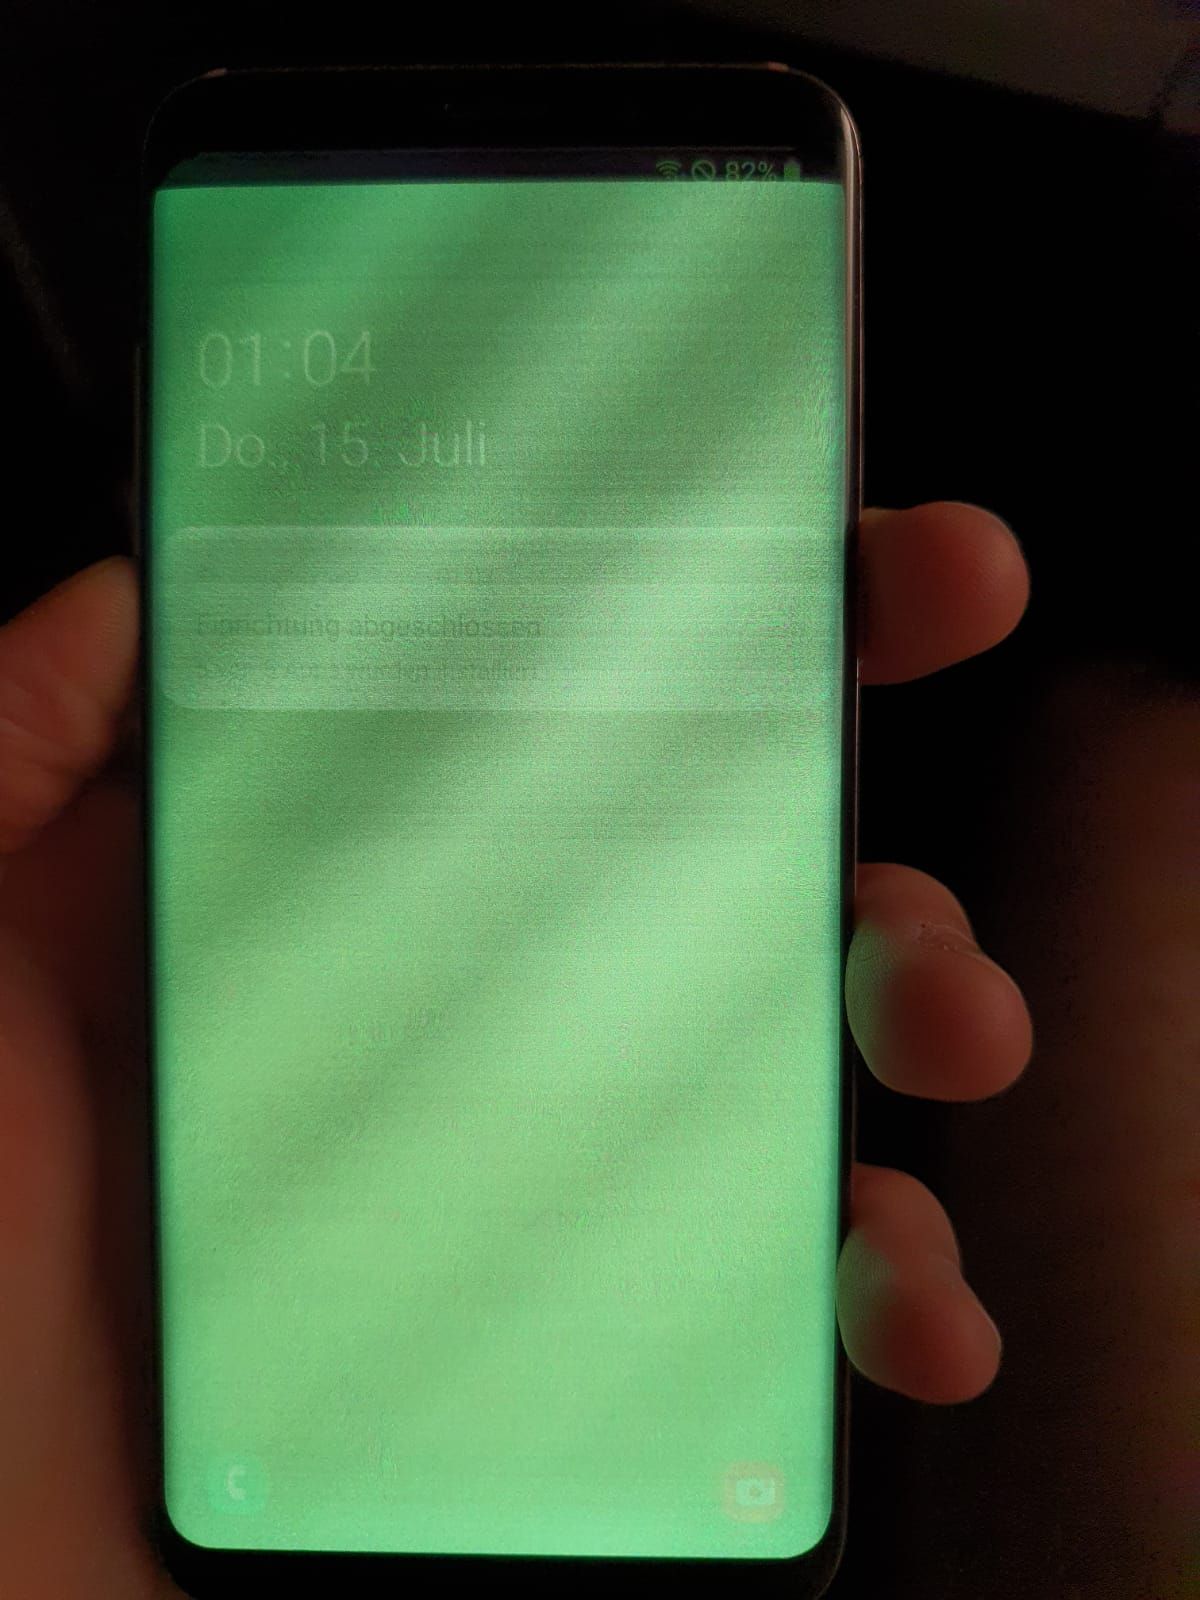 Galaxy S8 Display temporär grün eingefärbt / touch aussetzend - Samsung  Community